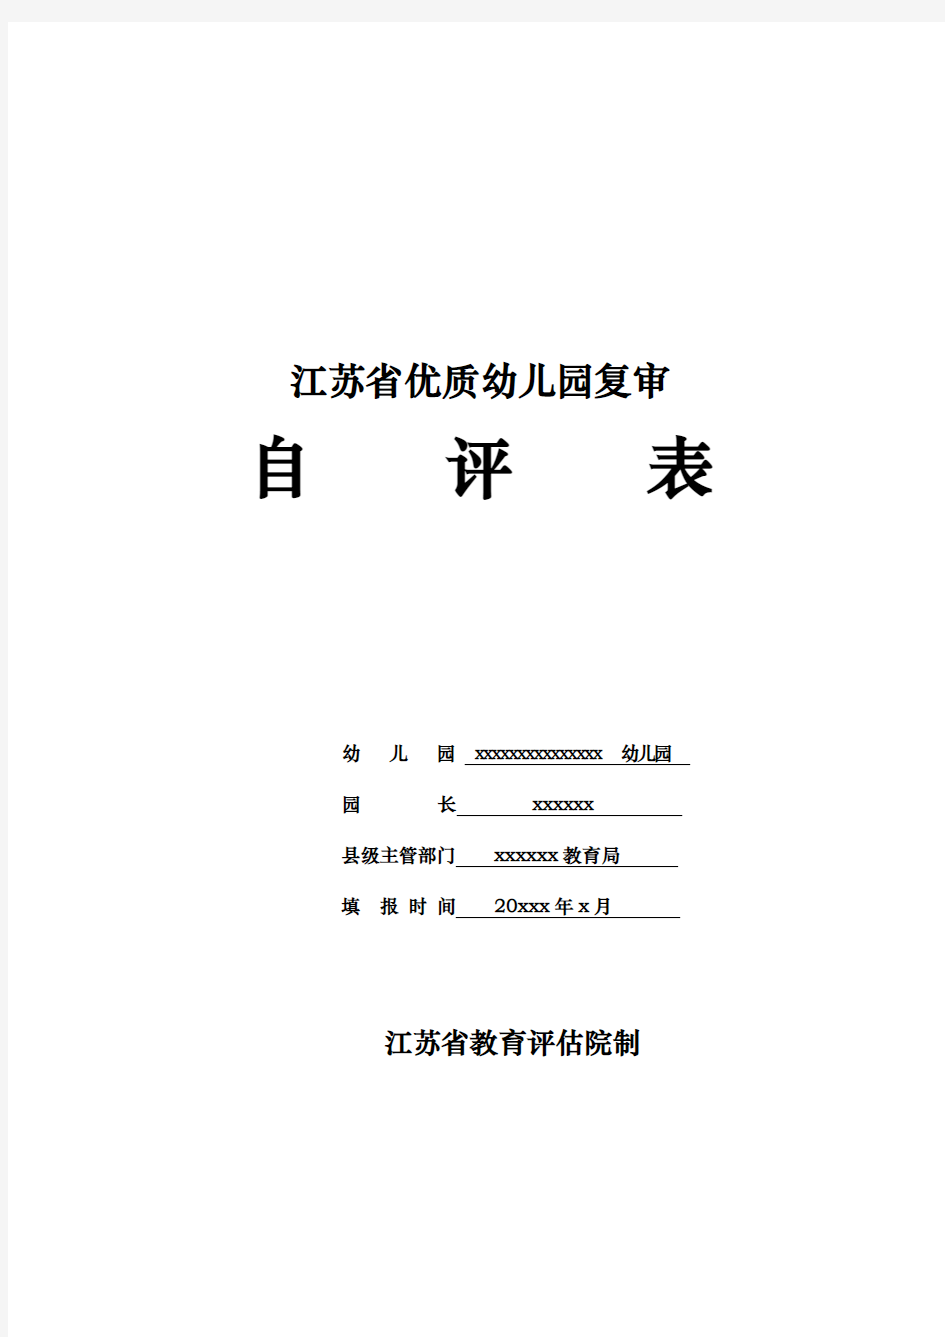 江苏省优质幼儿园复审自评表(自评报告、自评数据)新